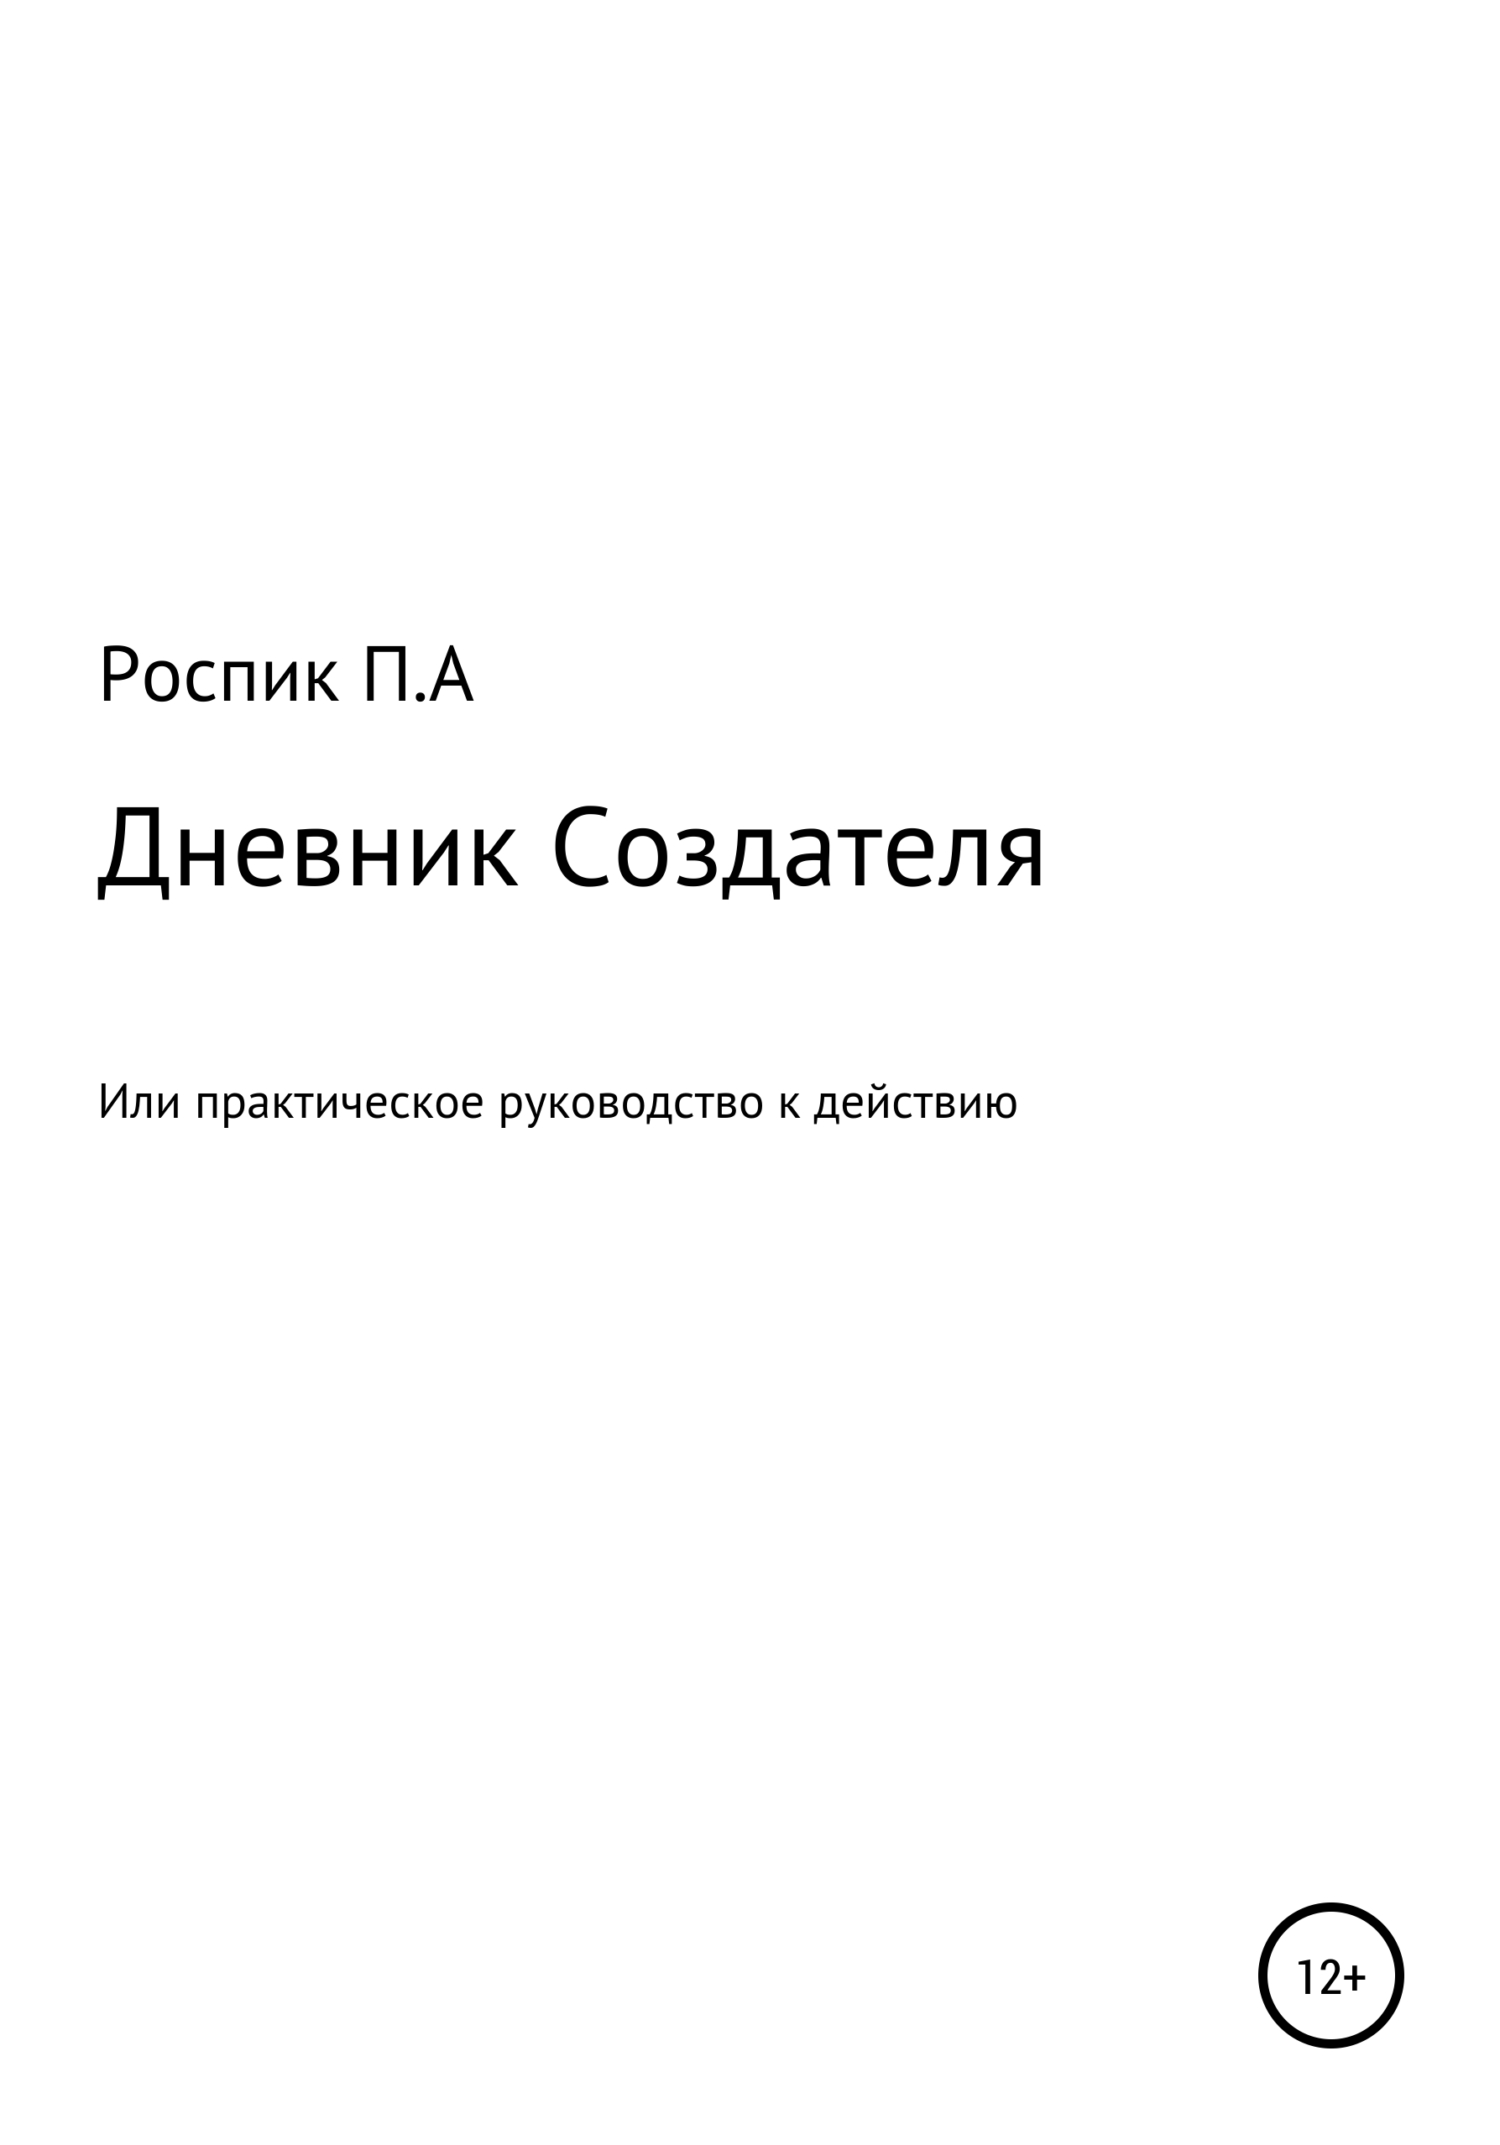 Дневник Создателя, или Практическое руководство к действию - Павел Александрович Роспик